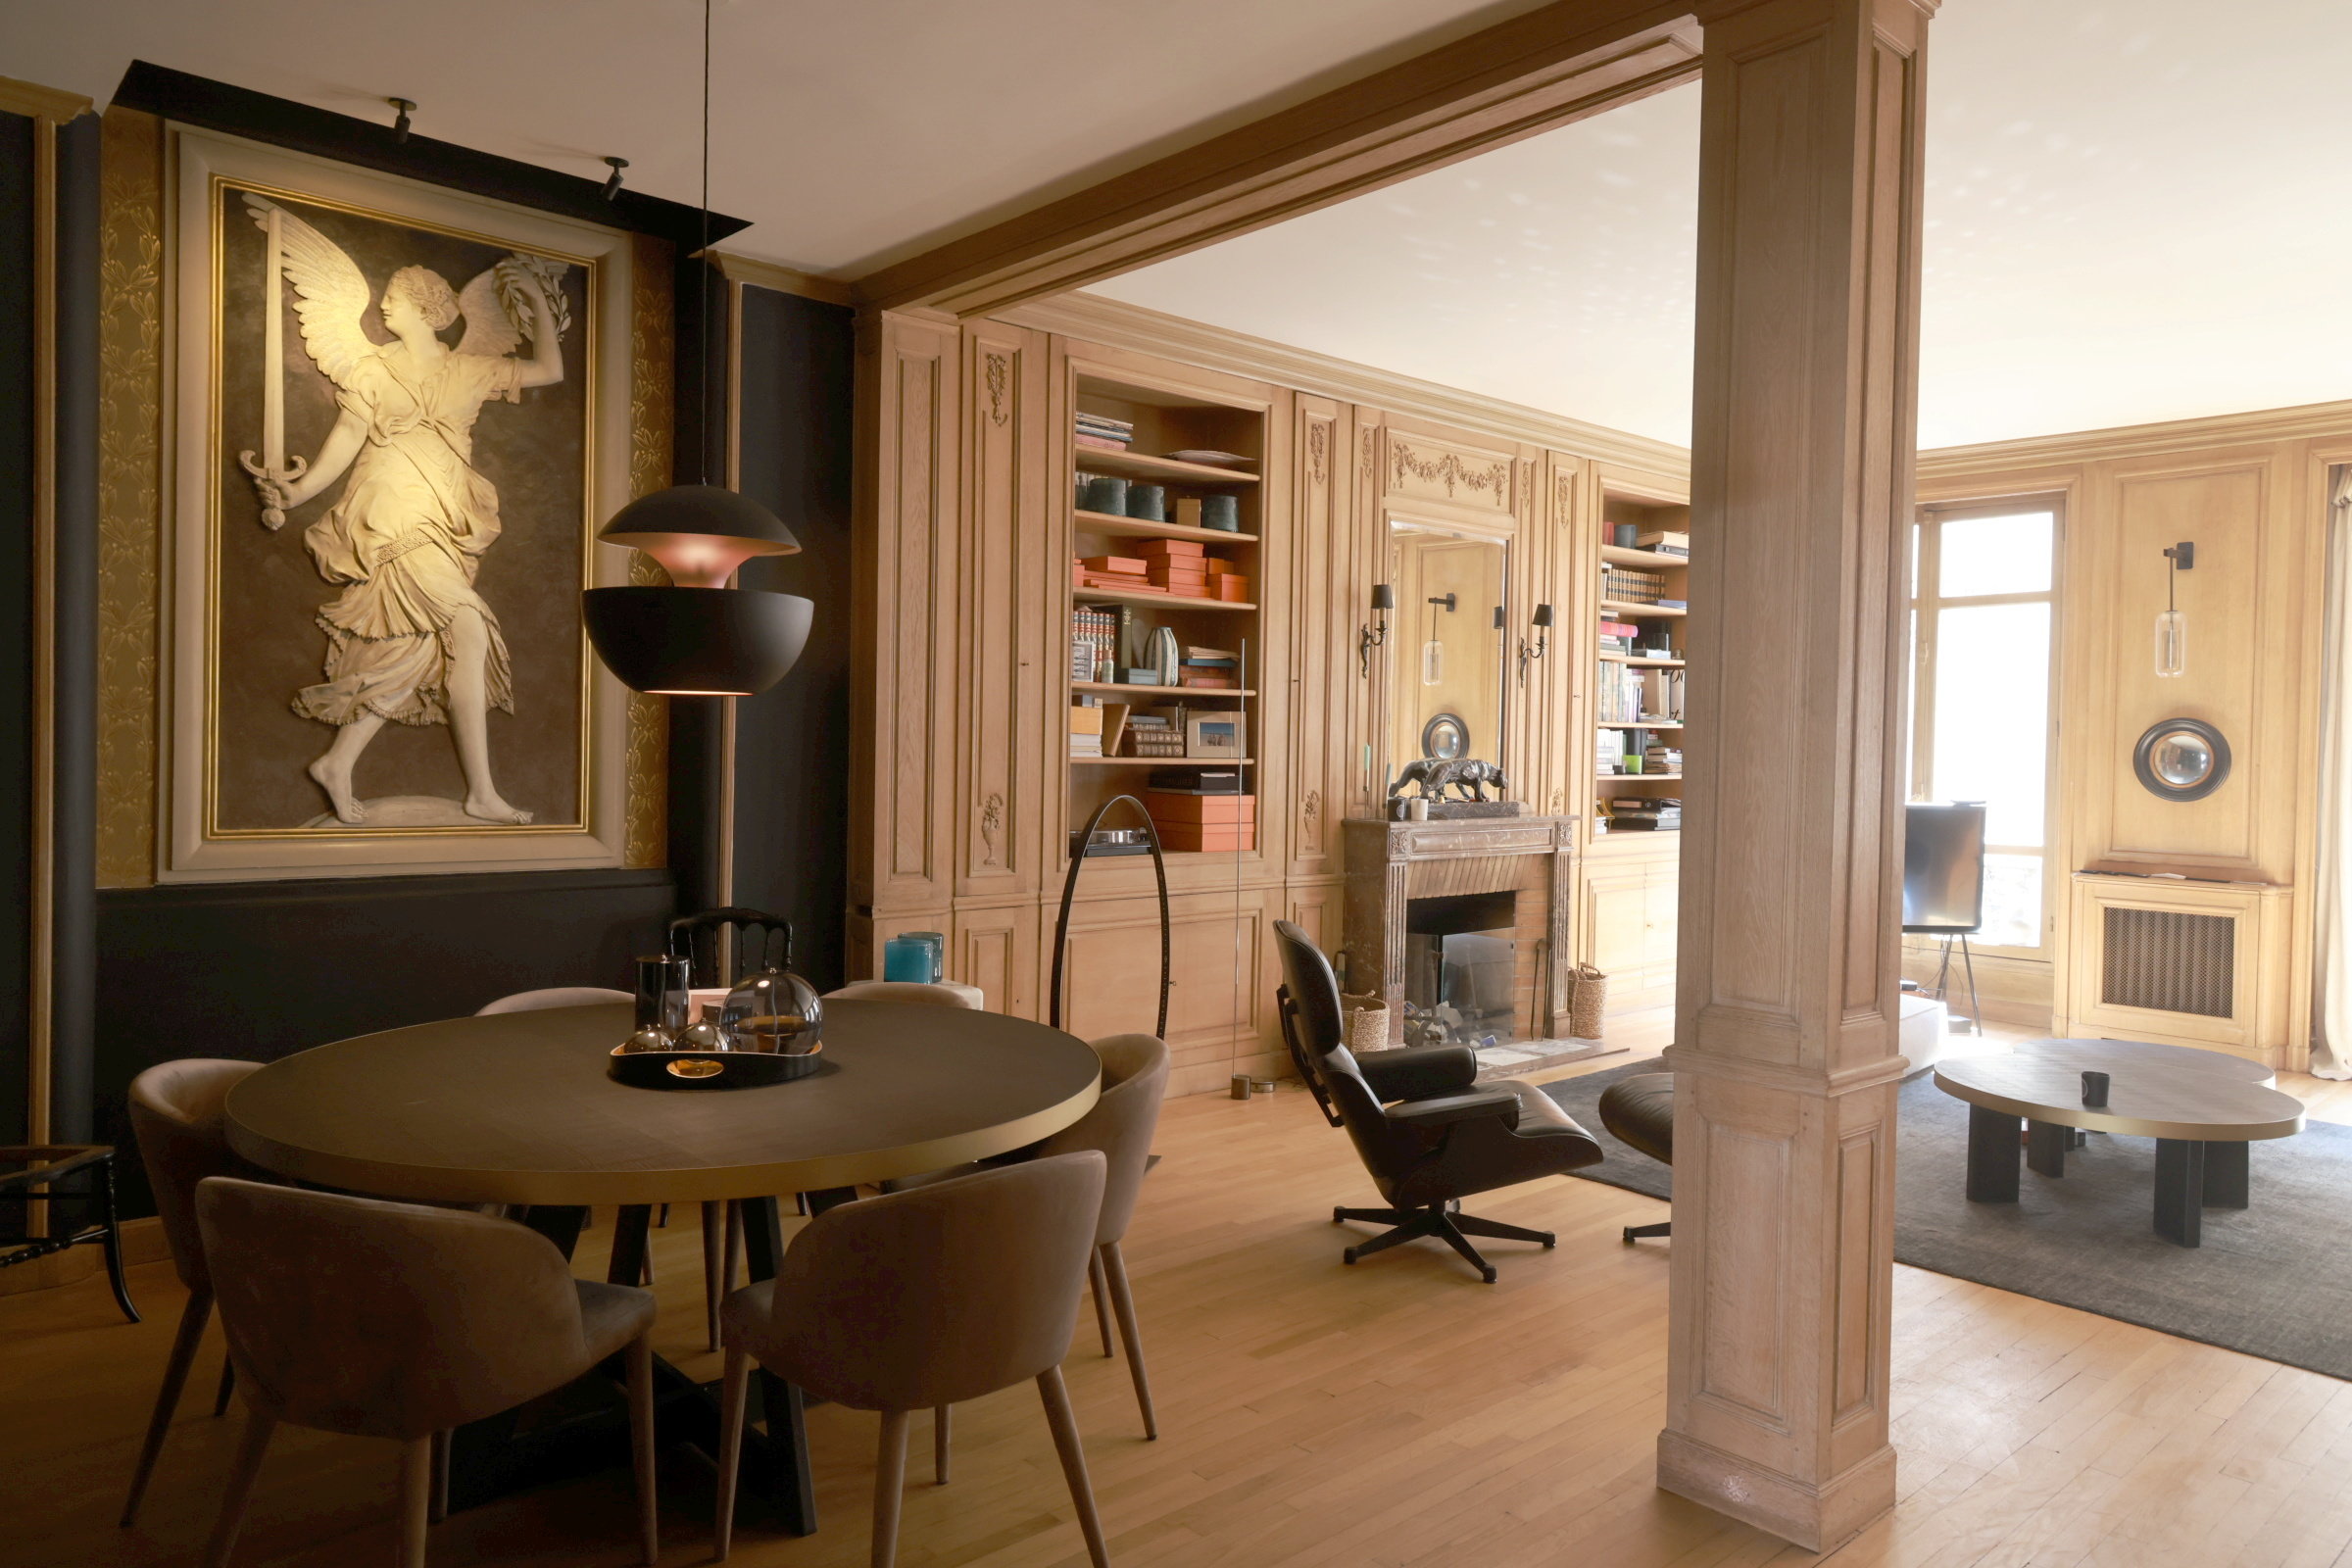 Paris (XVIe), le 26 mai. Cet appartement de cinq pièces situé rue Bazin est en vente. La déesse, visible à gauche sur la photo, a été découverte lors de travaux de rénovation en 2019. LP/Philippe Lavieille